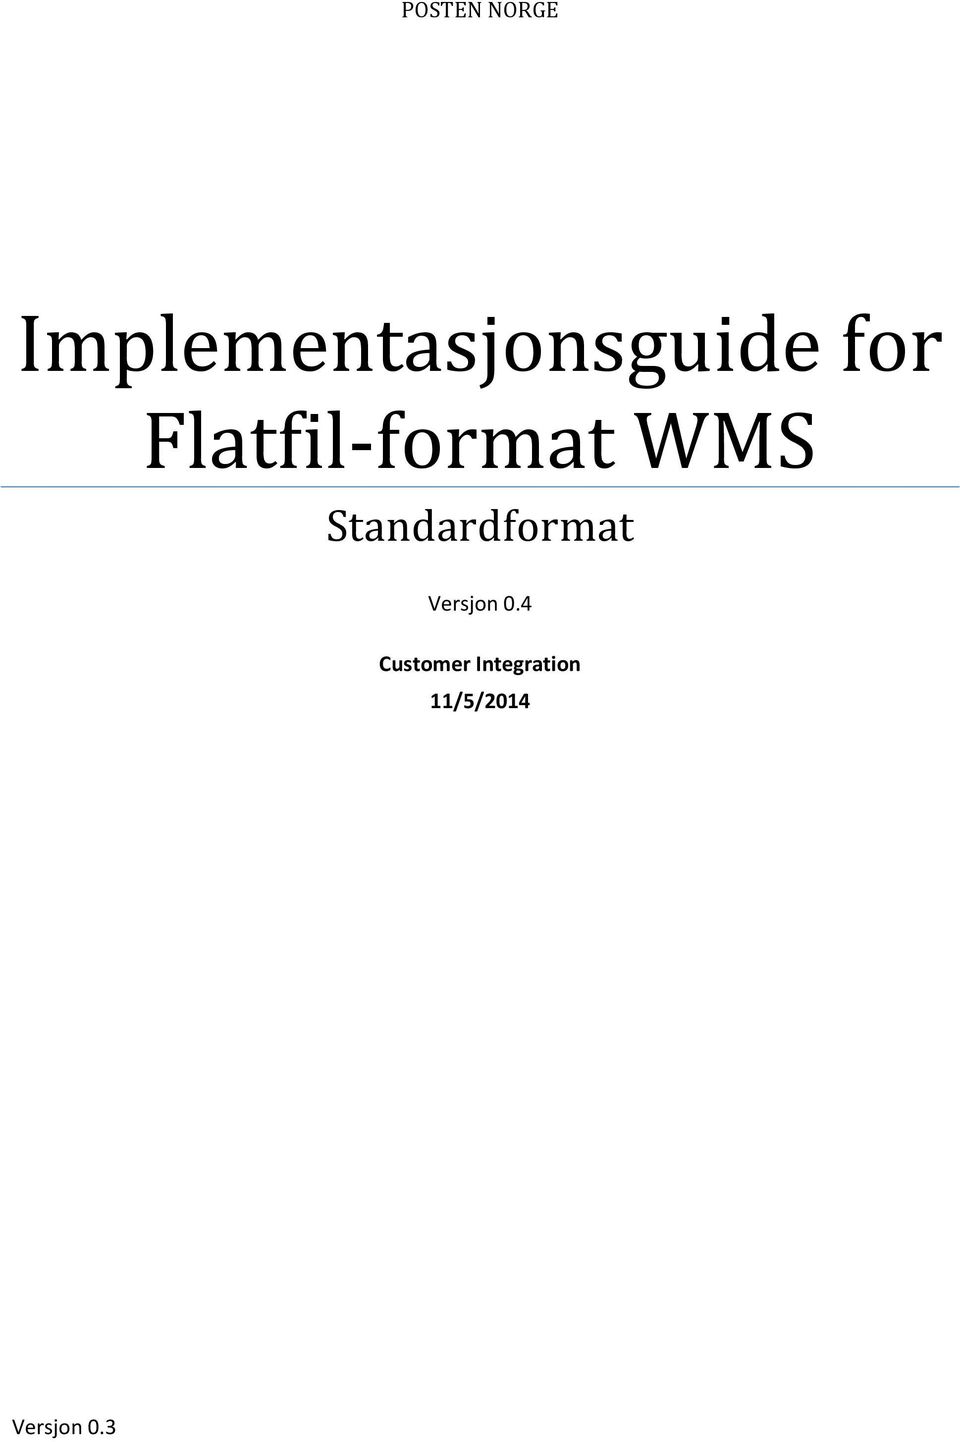 Flatfil-format WMS